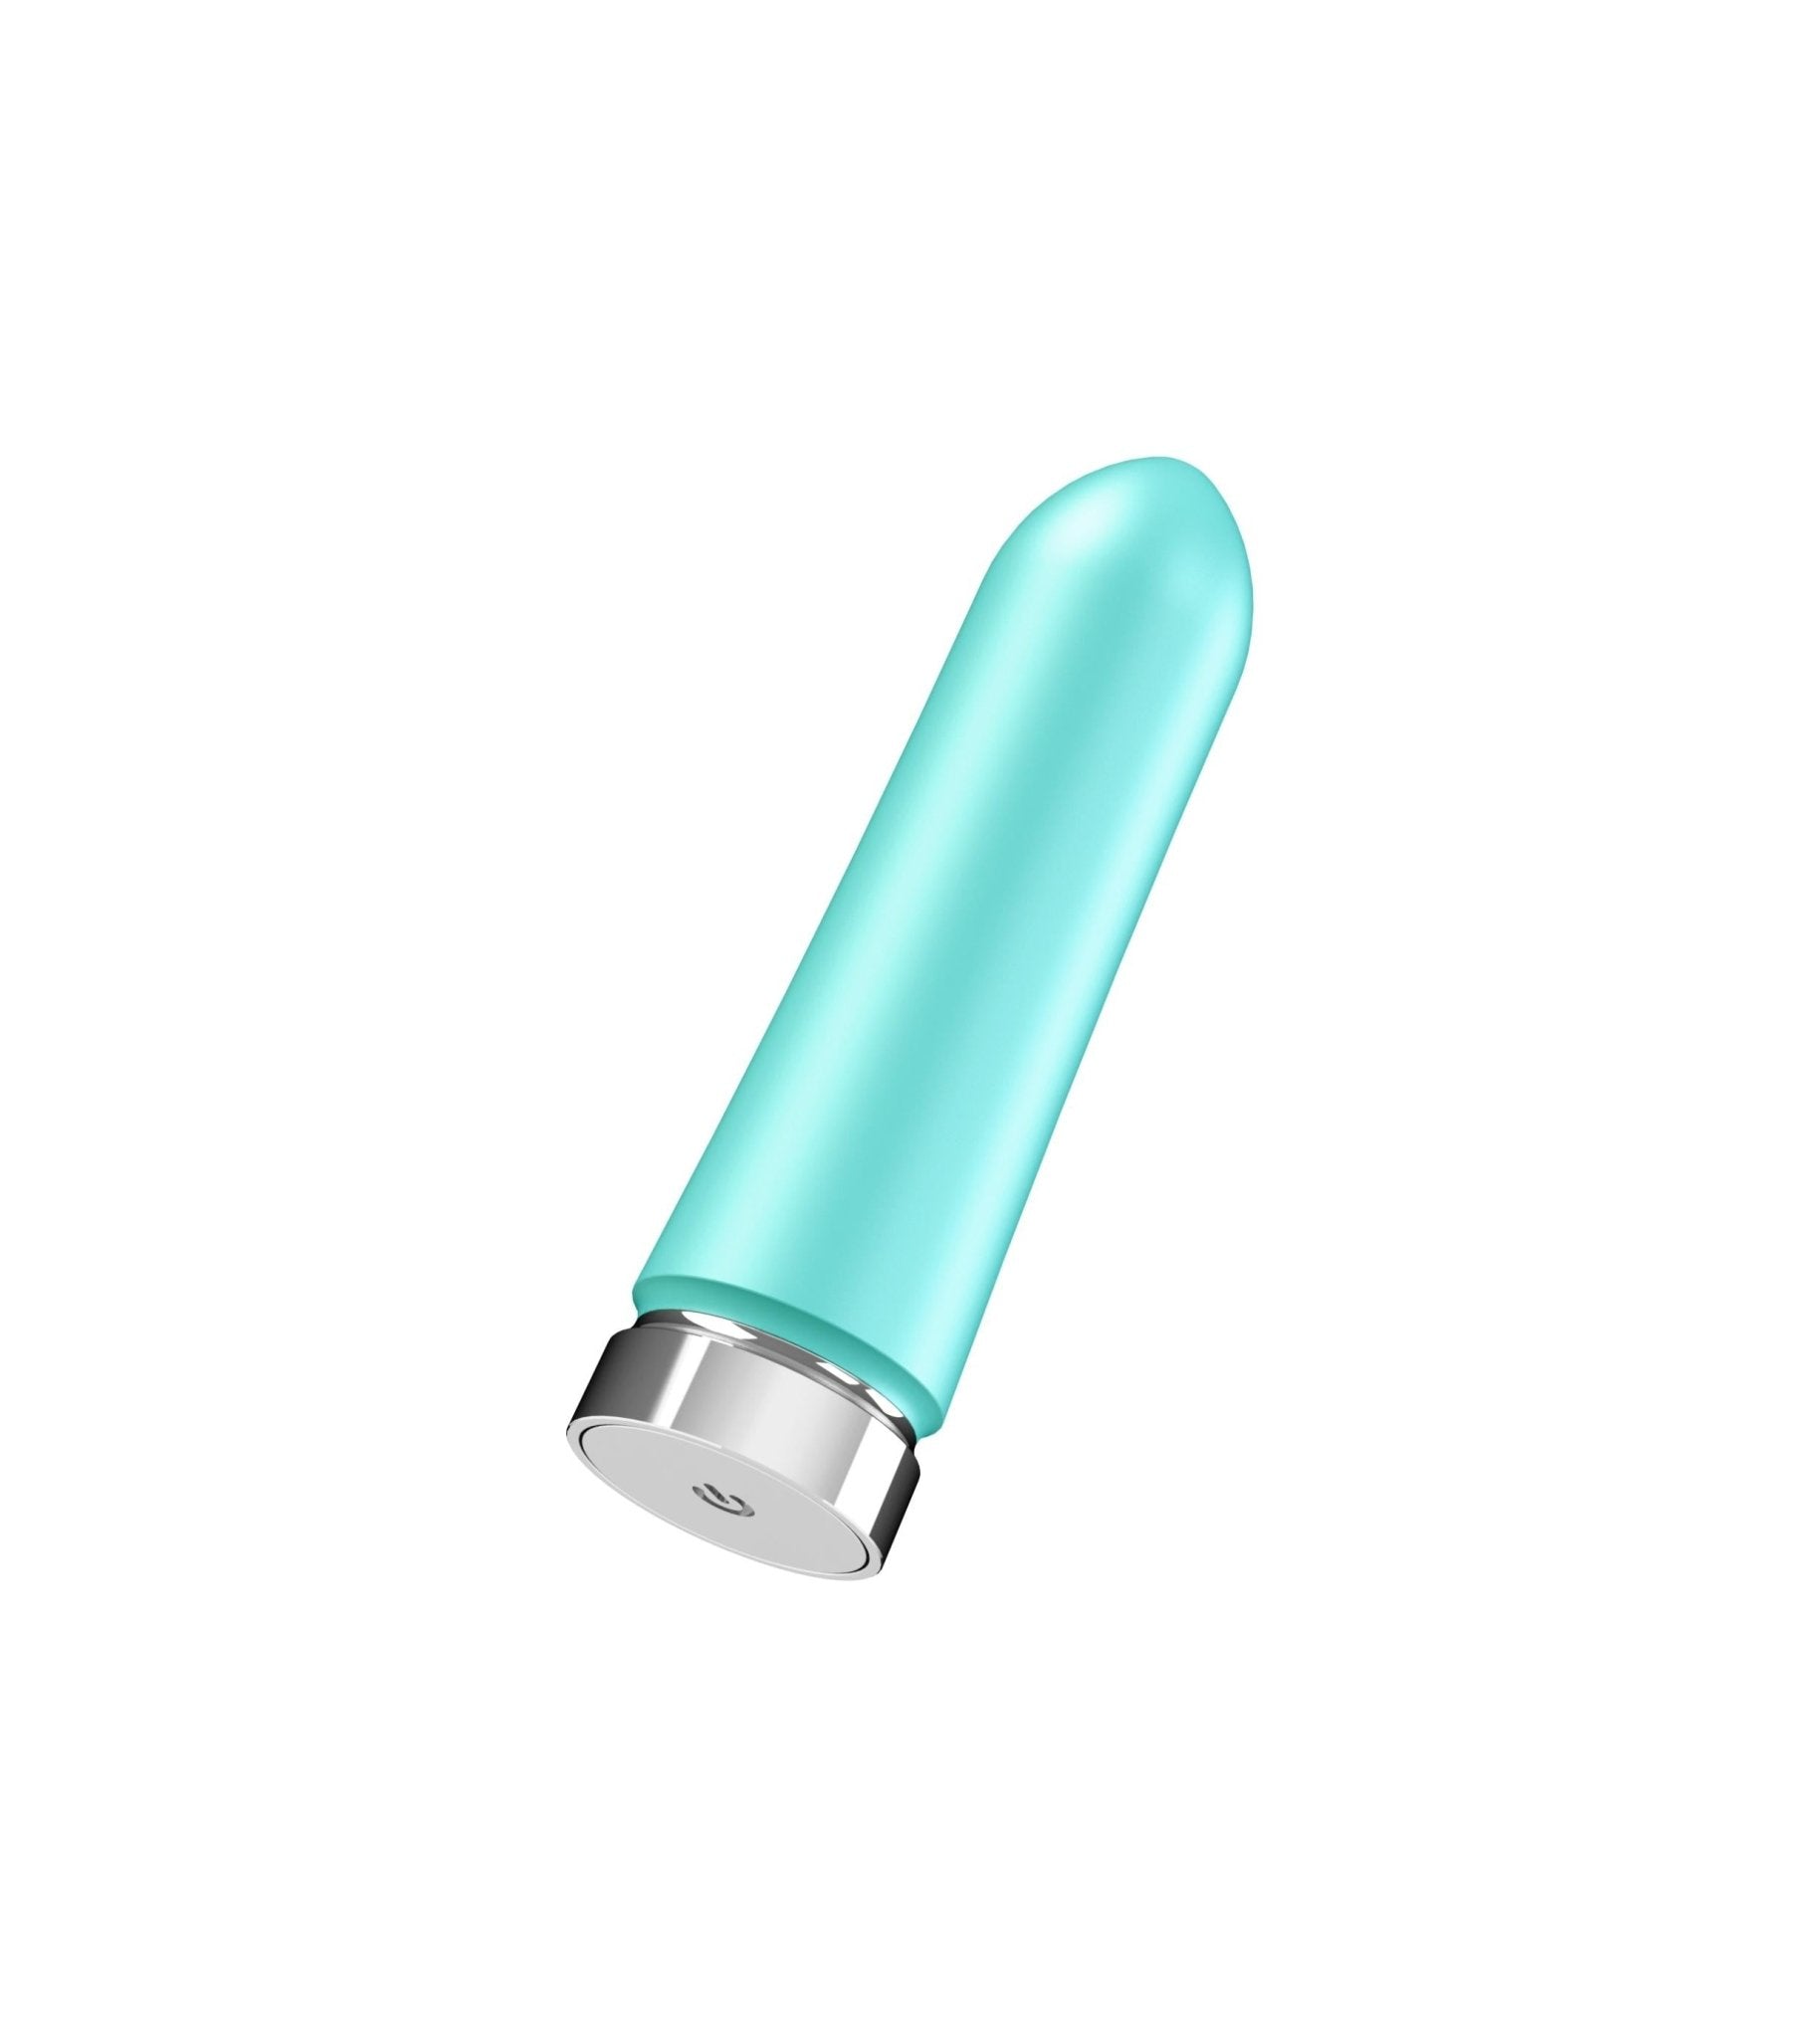 Bam™: Sensational 10-Mode Silicone Bullet Vibrator Indigo